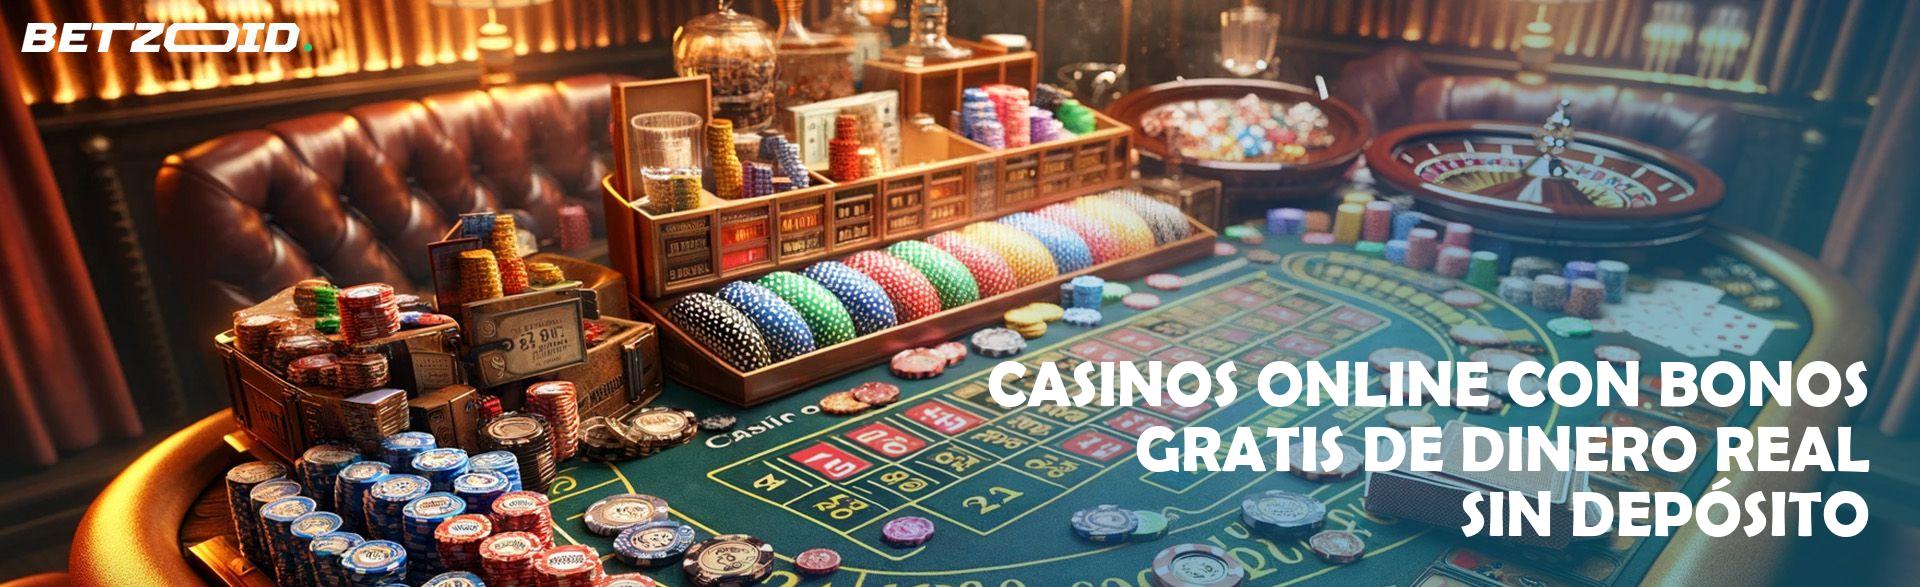 Casinos nuevos sin deposito